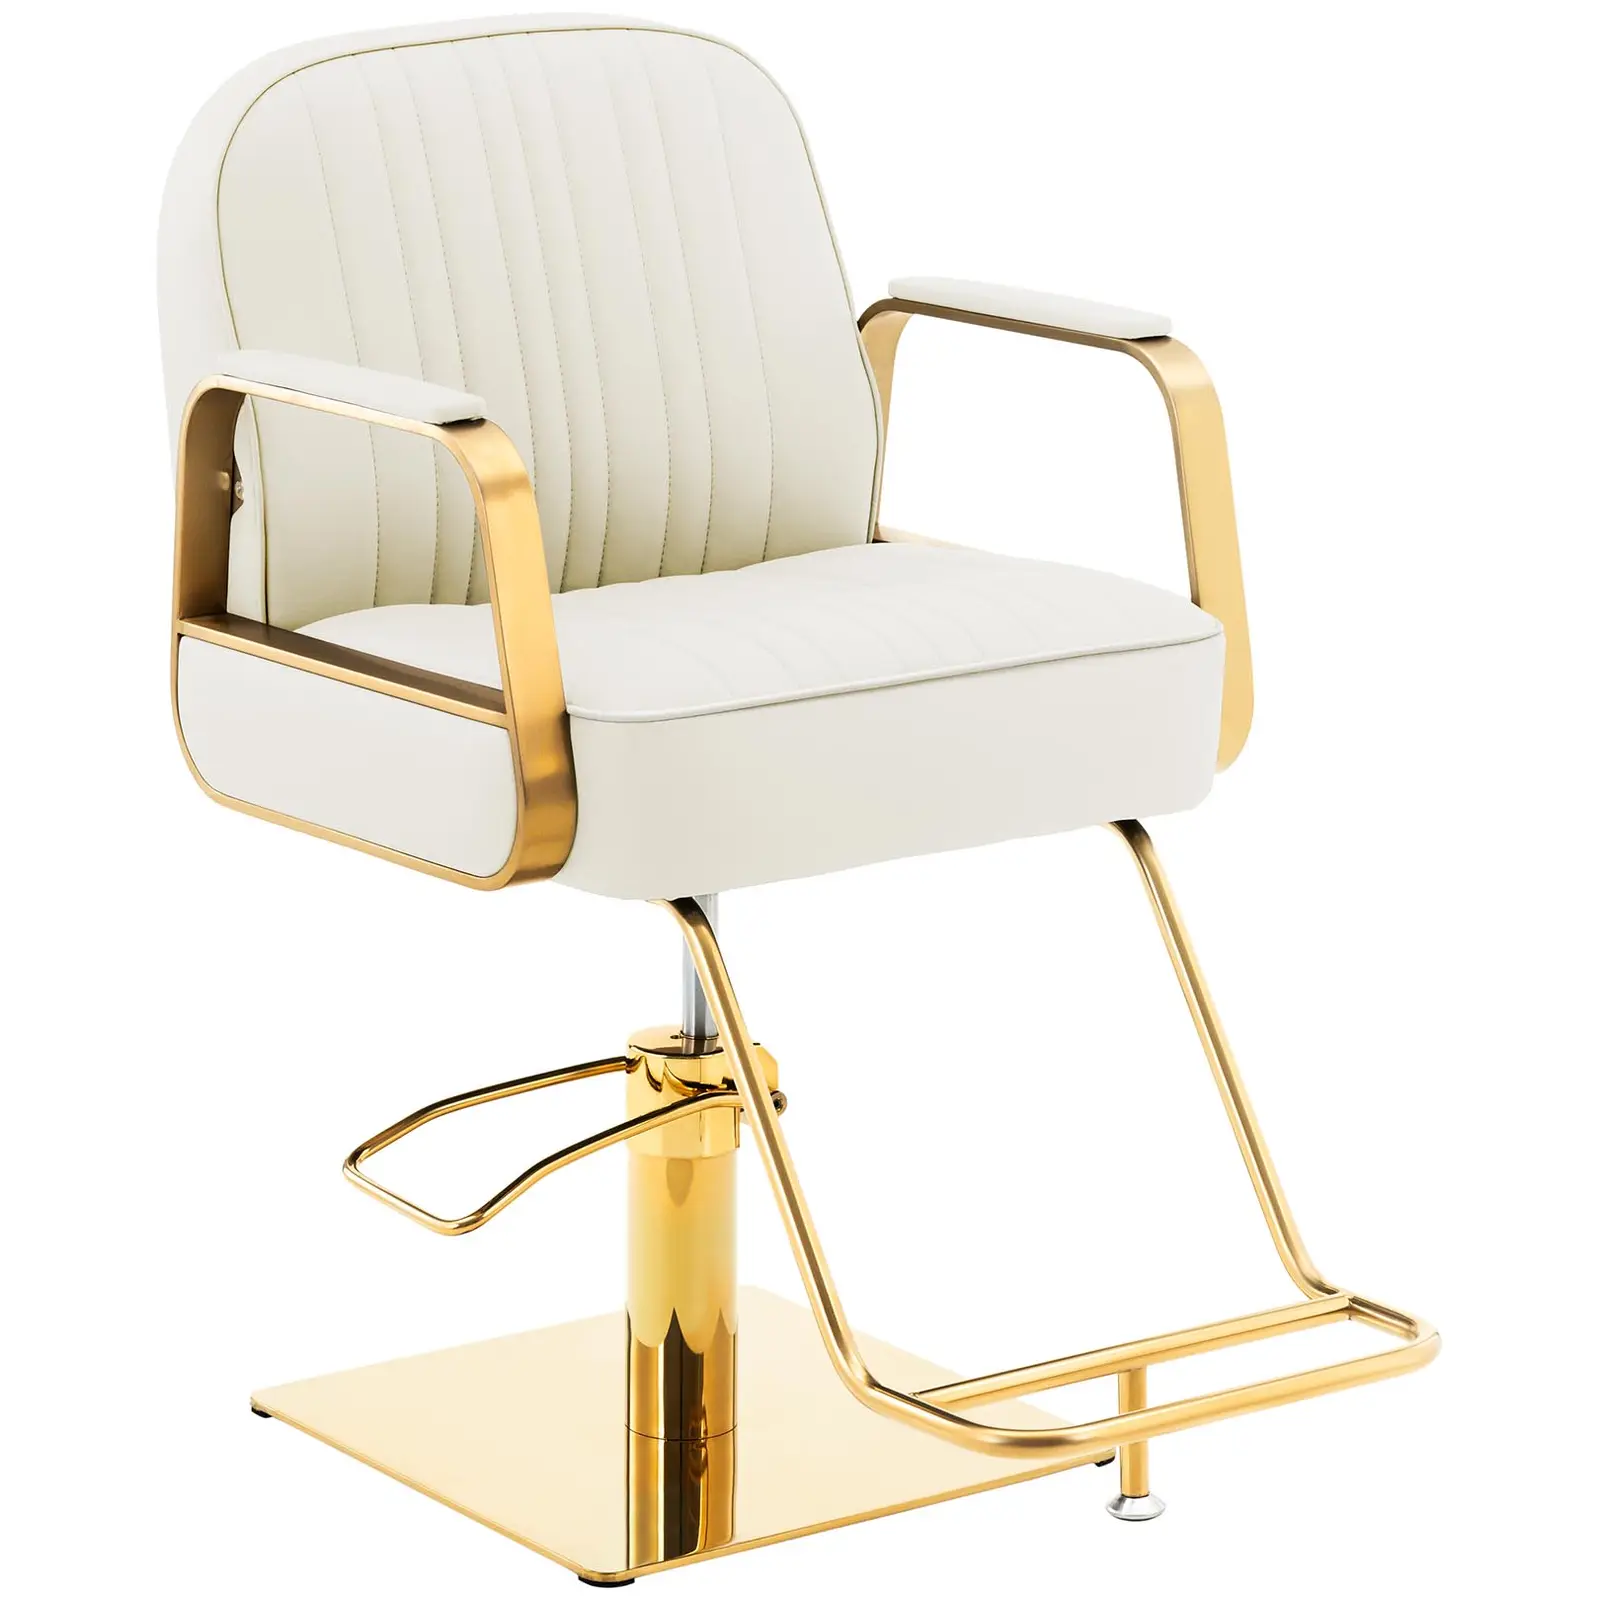 Salono kėdė su atramomis kojoms - 920 - 1070 mm - 200 kg - kreminė / auksinė